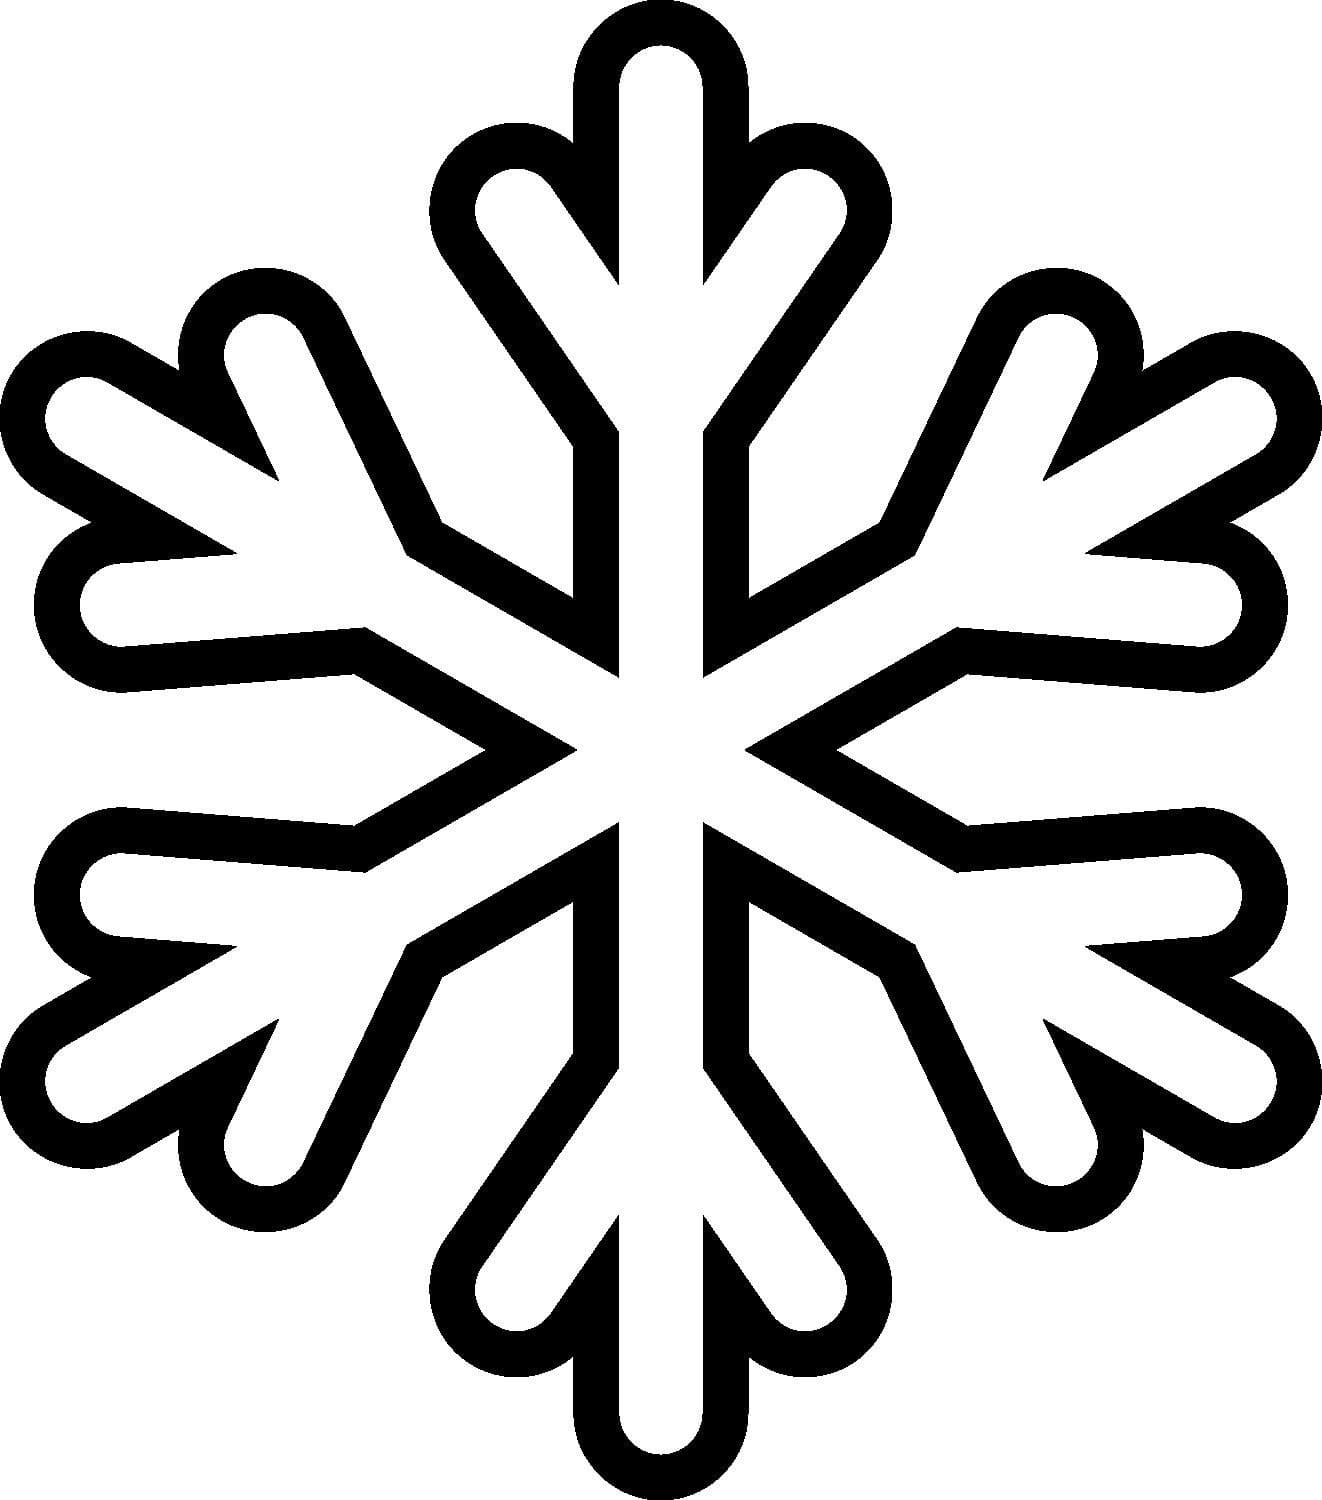 Desenhos de Floco de Neve para Colorir